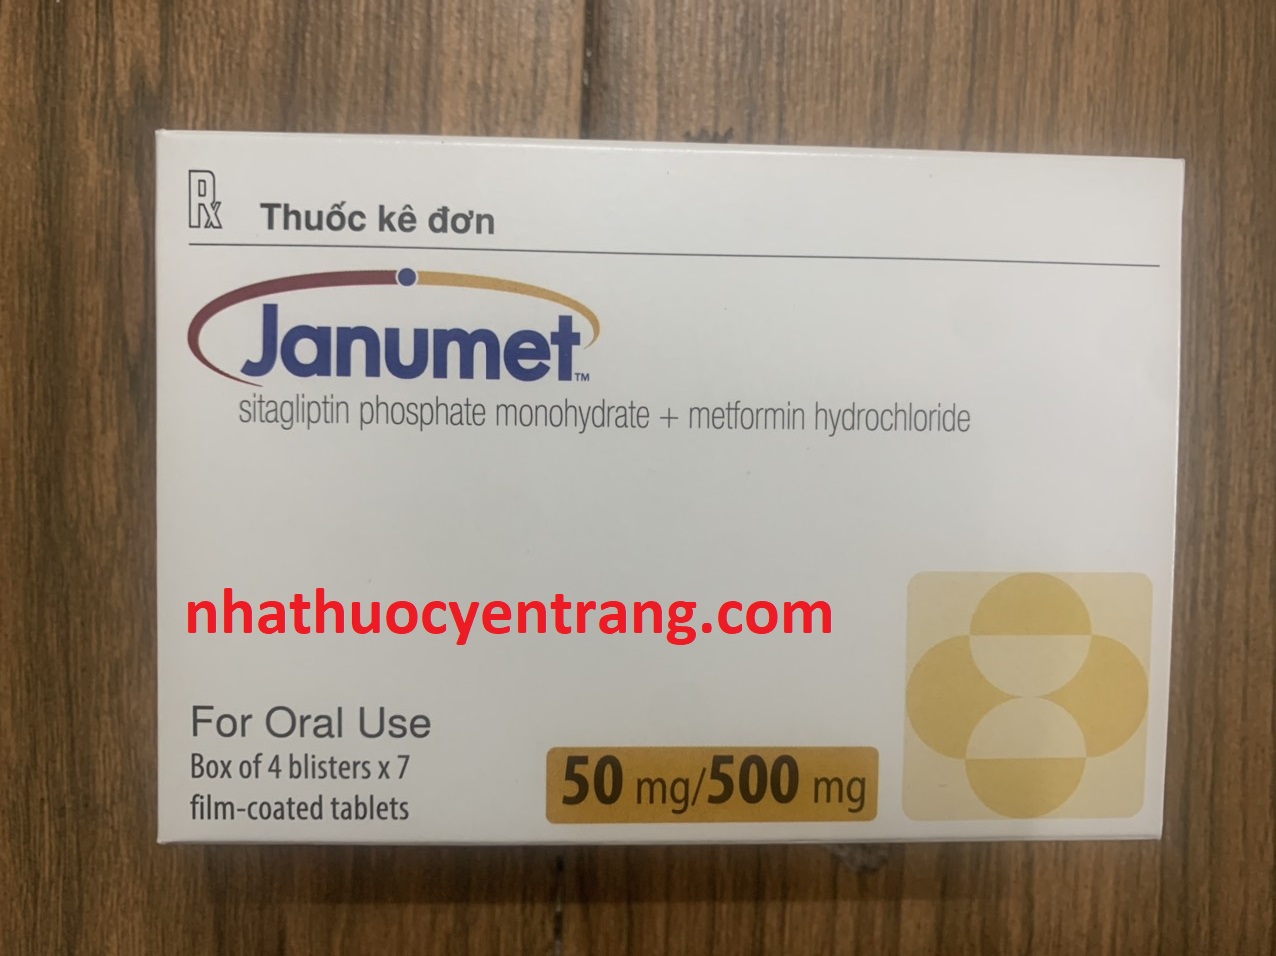 Janumet 50/500 mg